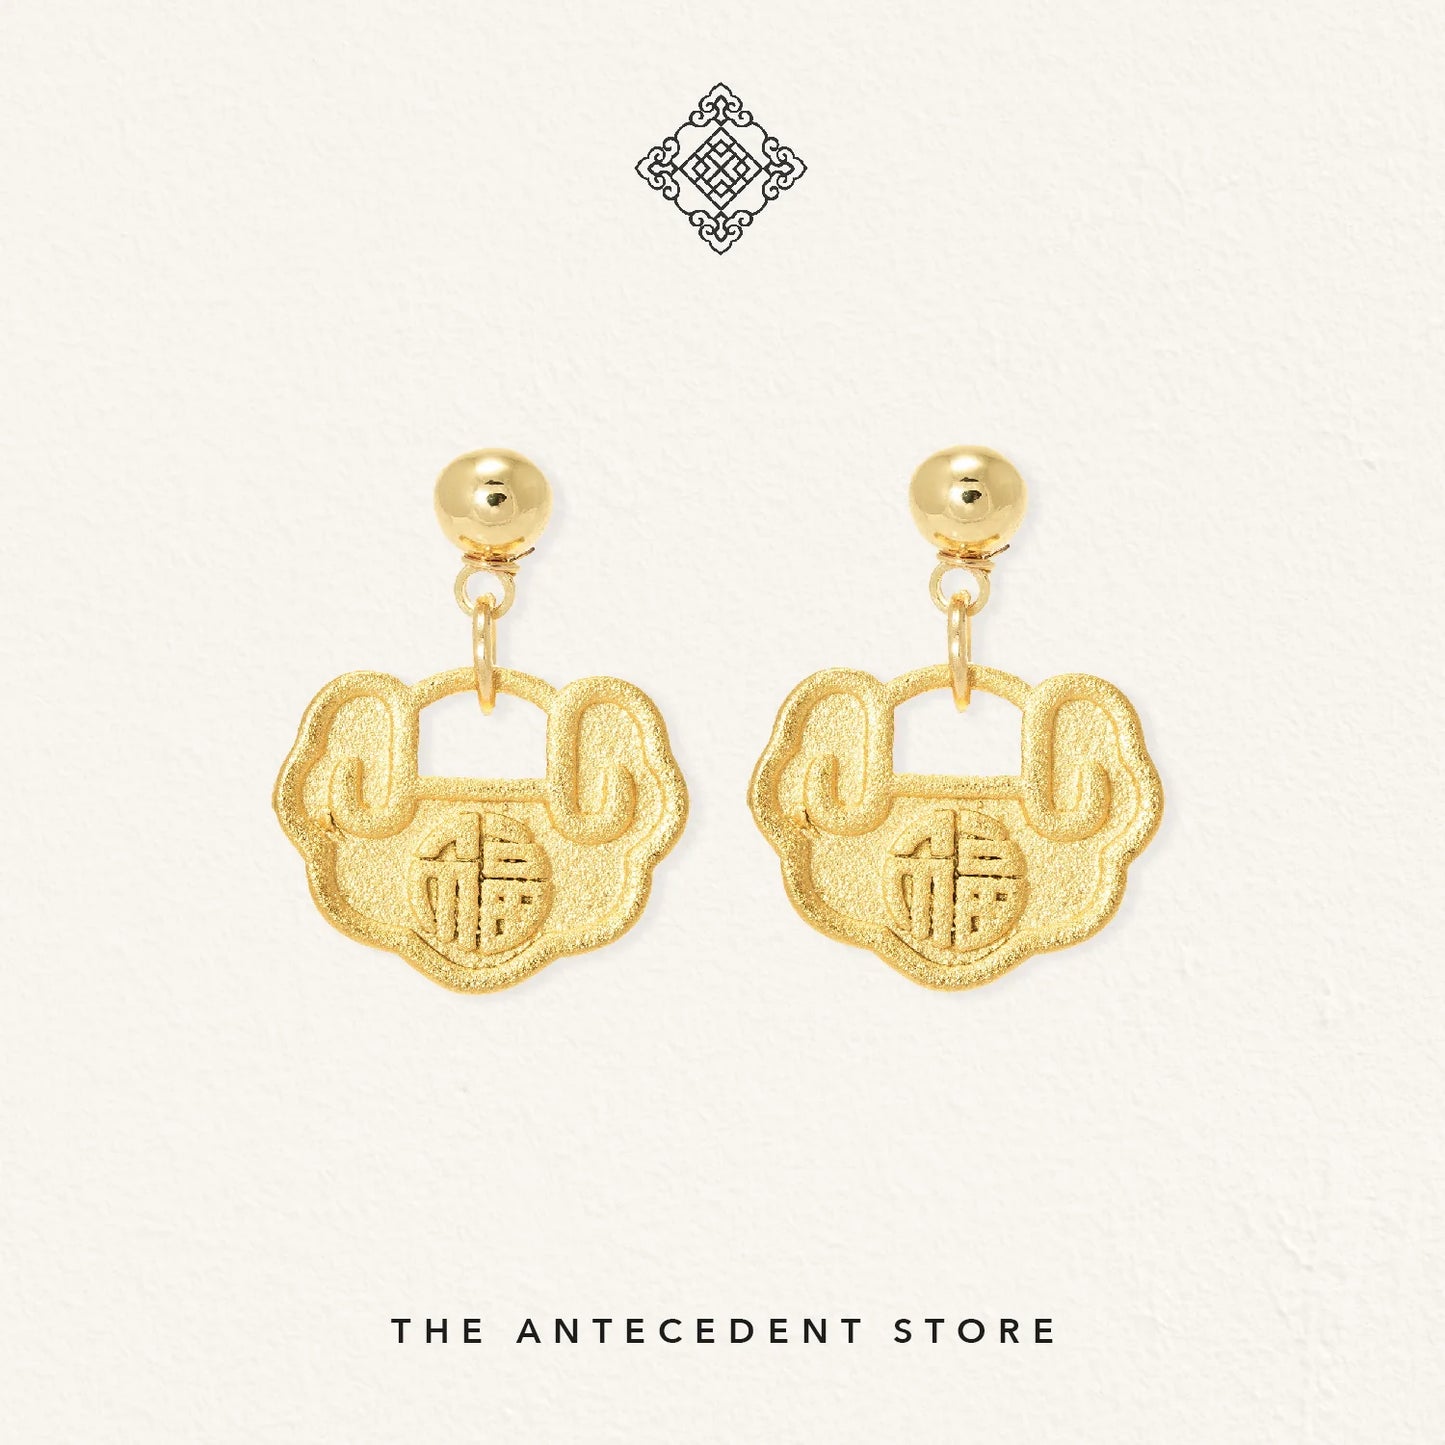 【如意锁】Longevity Lock Earrings With【福】Blessing Engravings - 14K Real Gold Plated Jewelry